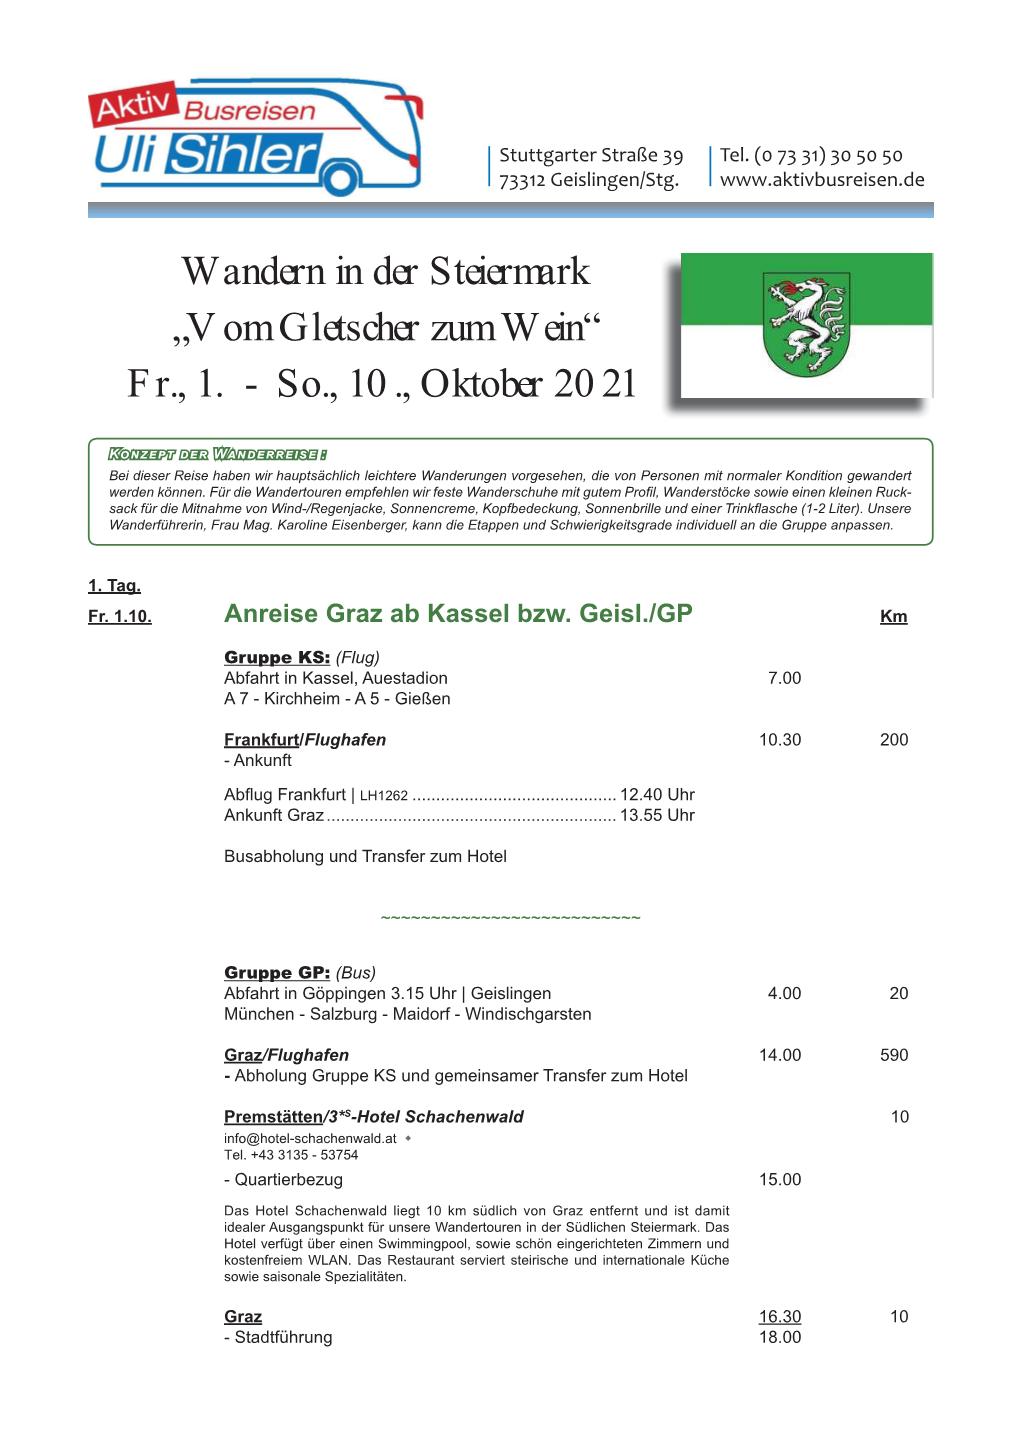 Beschreibung Wanderreise Steiermark Oktober 2021